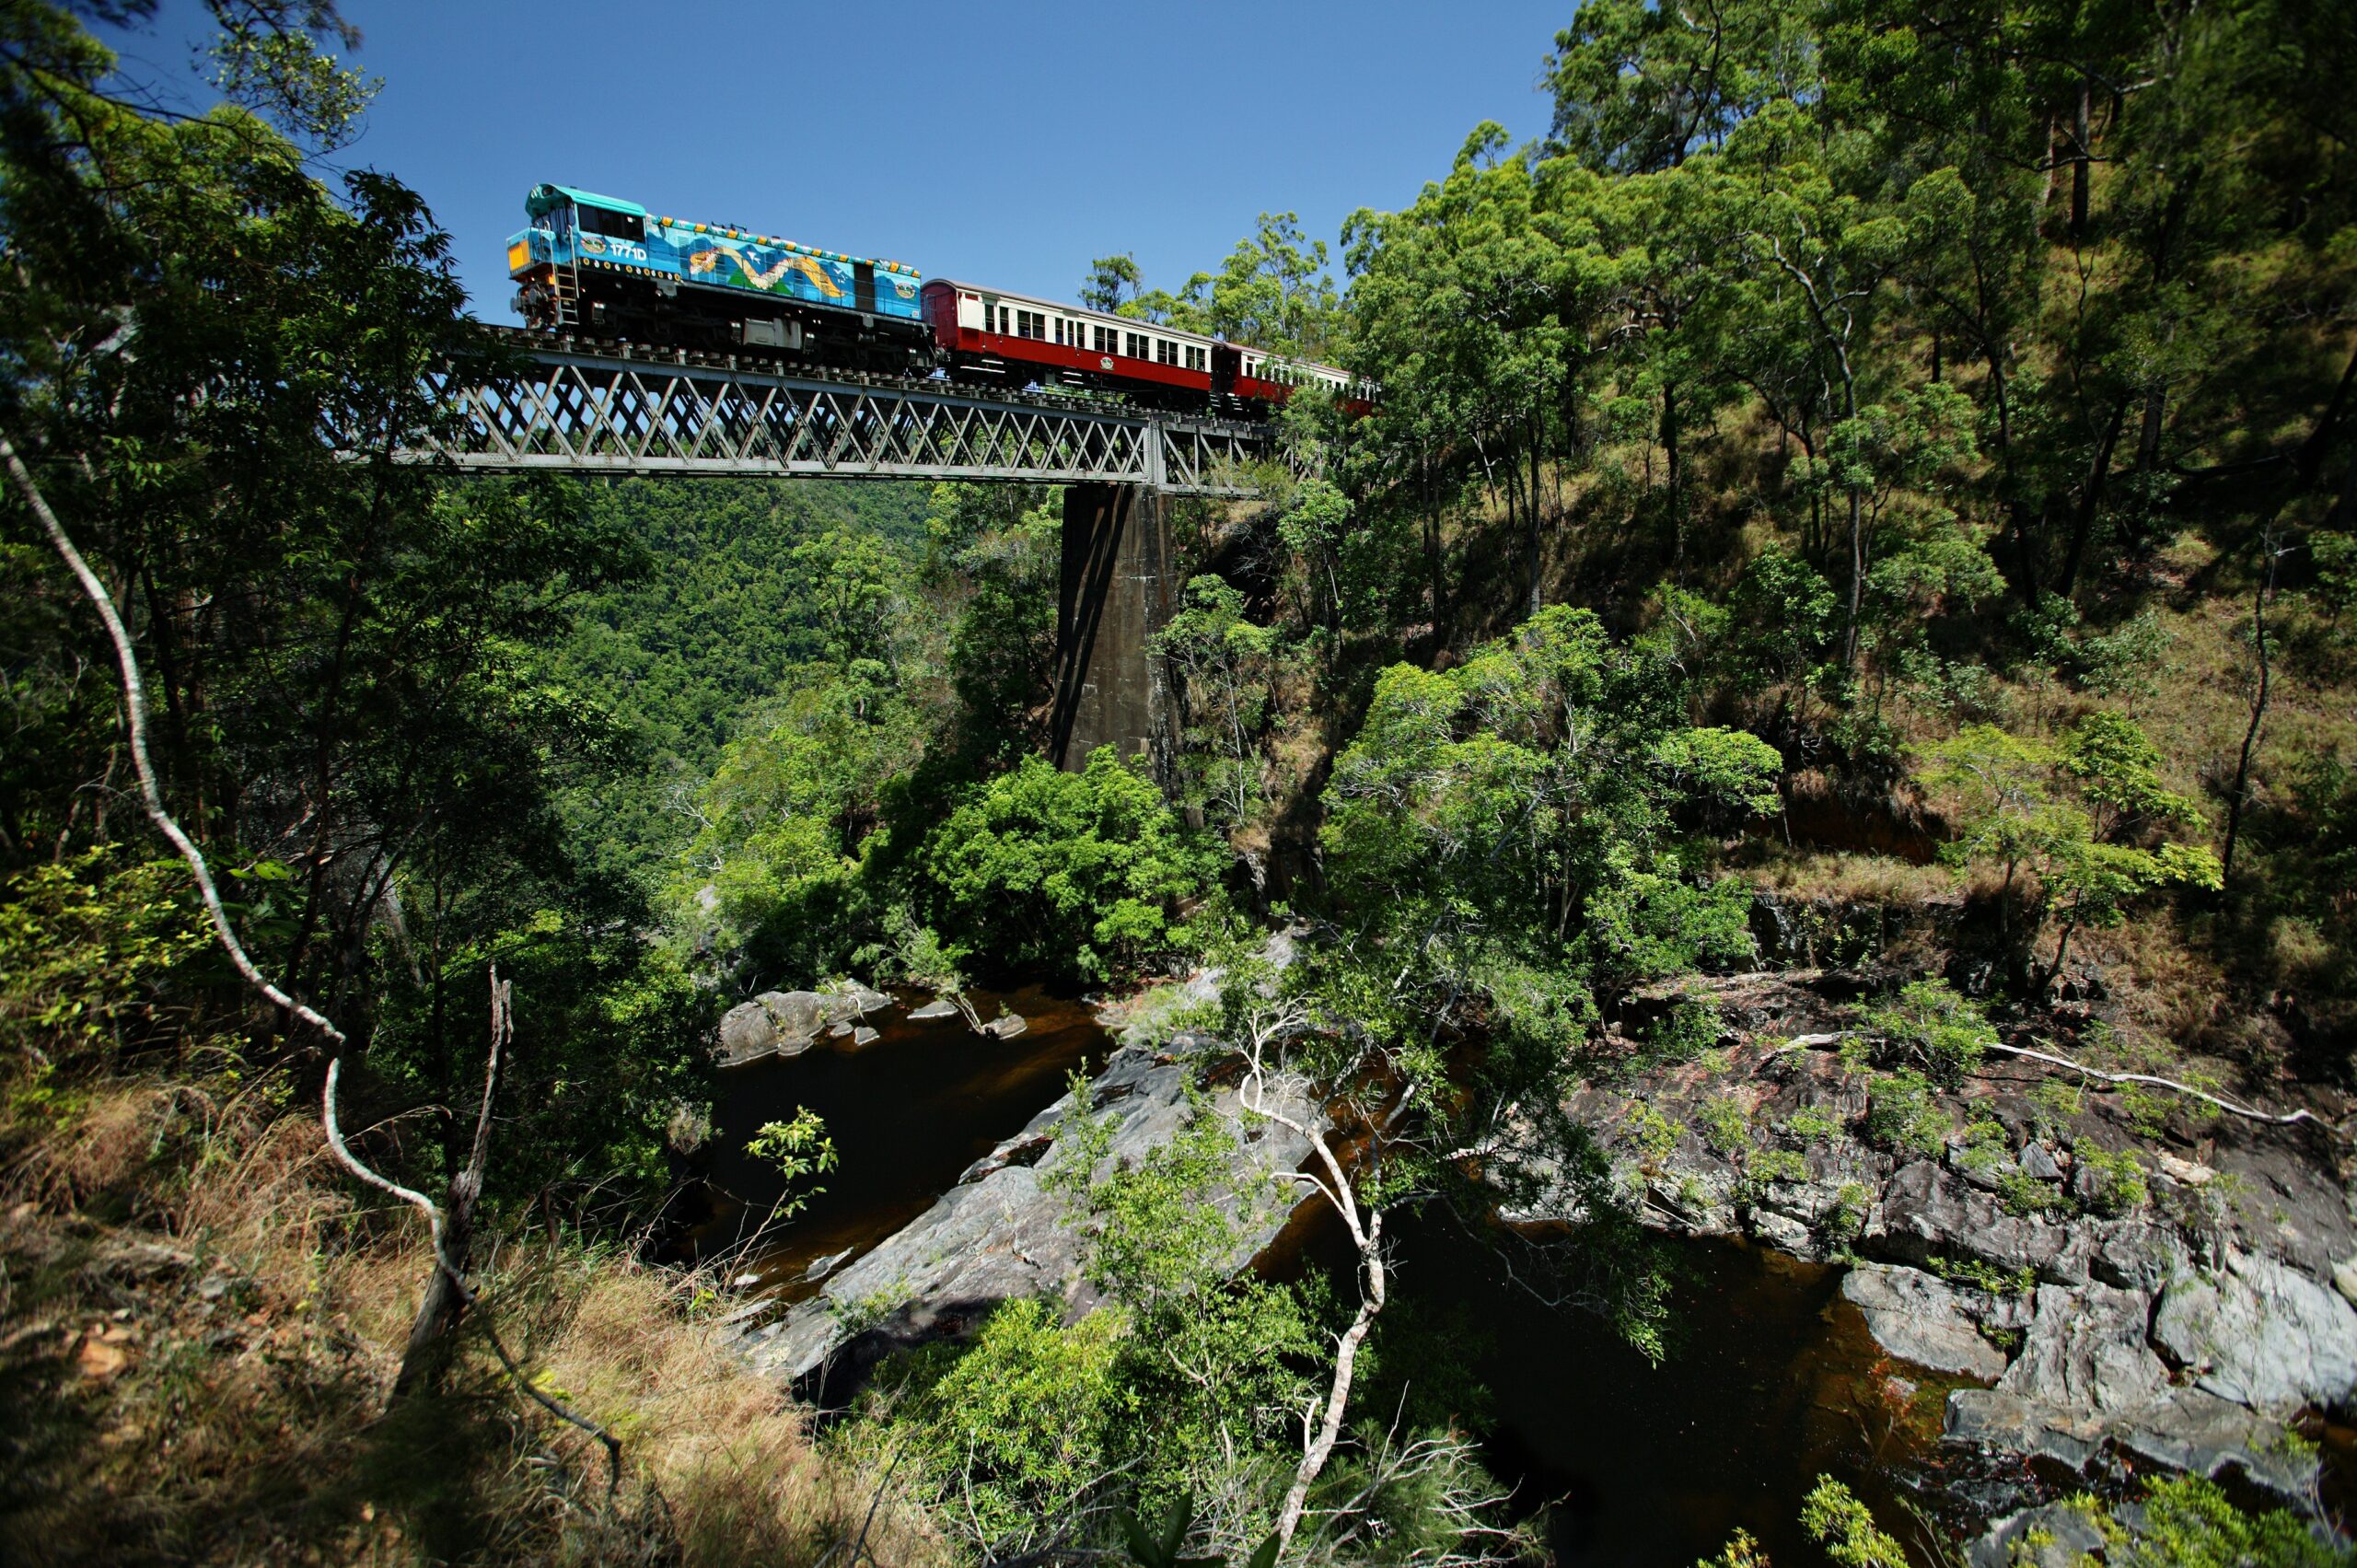 Kuranda: Skyrail, Rainforestation and Scenic Rail S-0900 Q-1530 XC